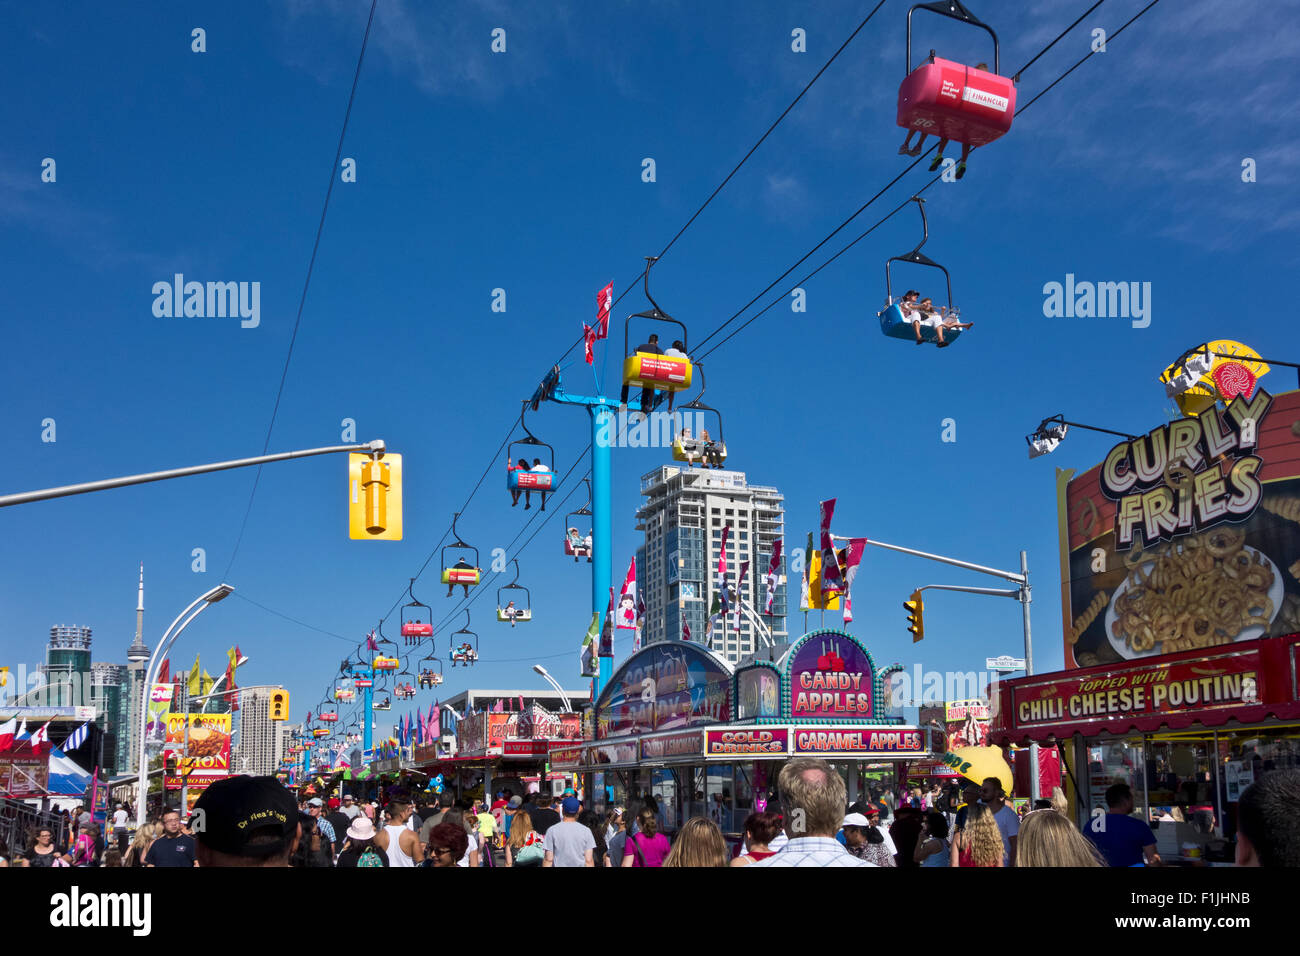 Sky Ride, Menschenmengen, Fast-Food Stände, an die kanadische nationale Ausstellung CNE in Toronto, Ontario Kanada, Sommer 2015 Stockfoto